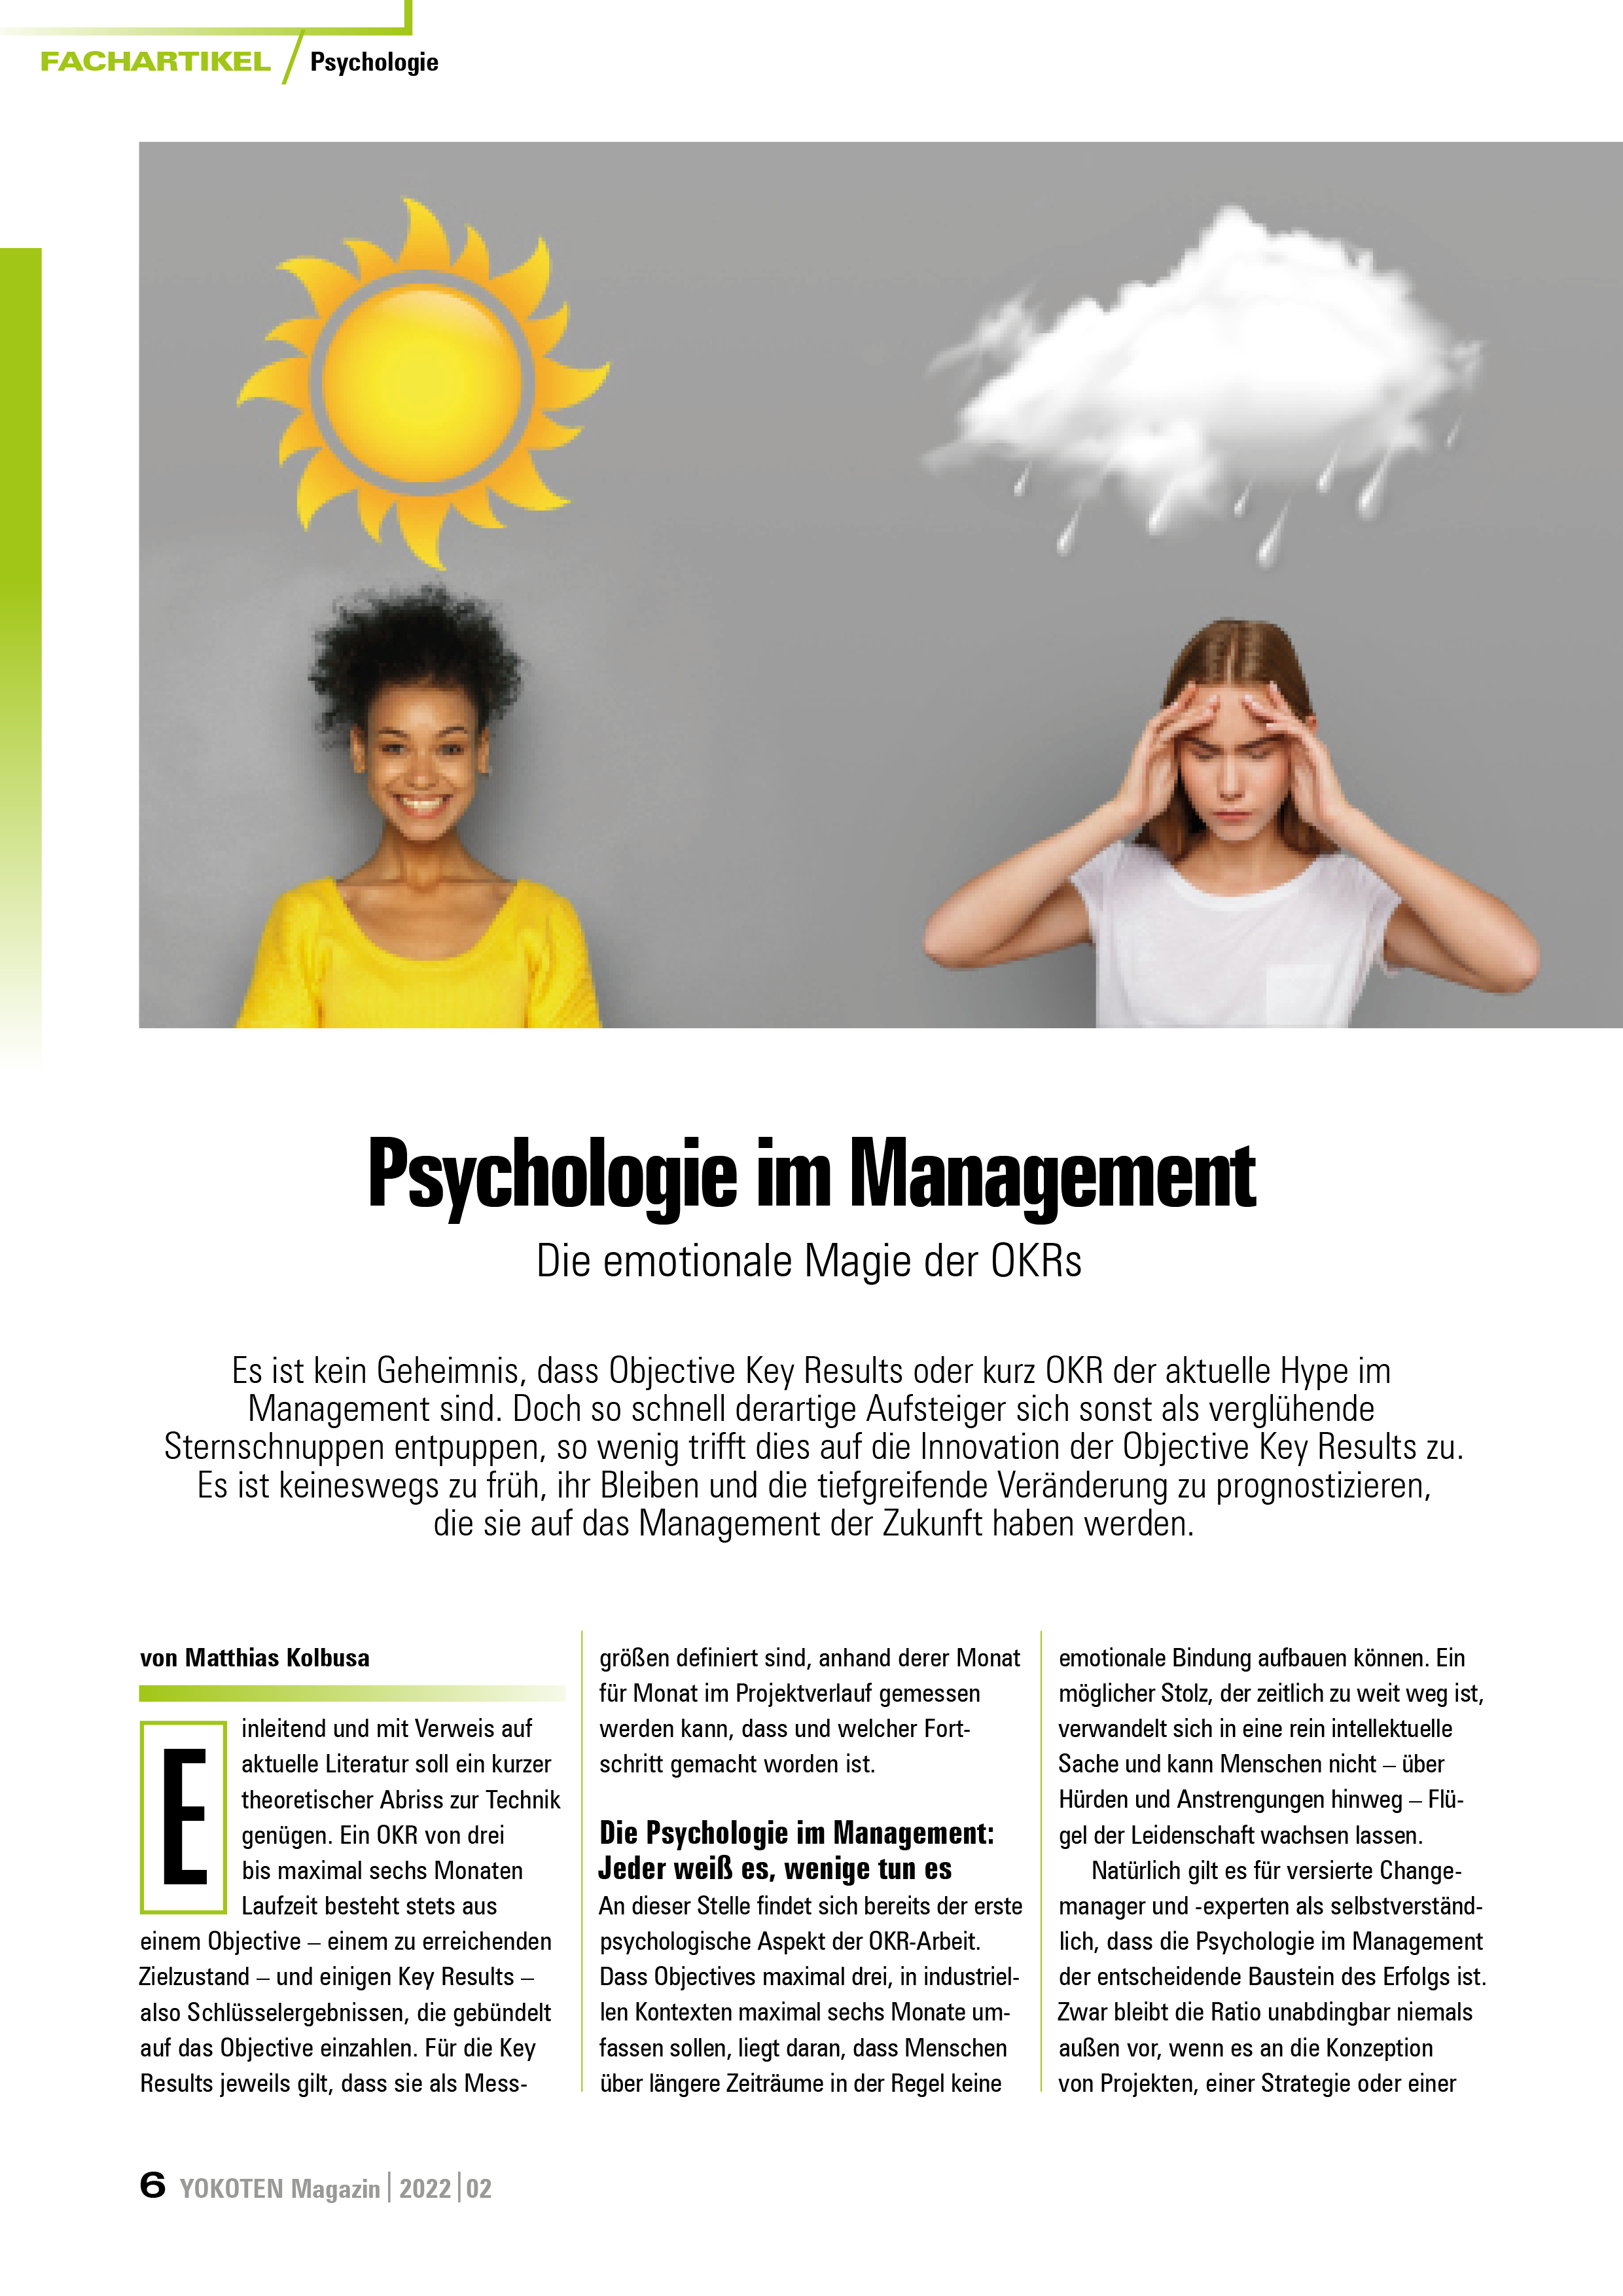 YOKOTEN-Artikel: Psychologie im Management